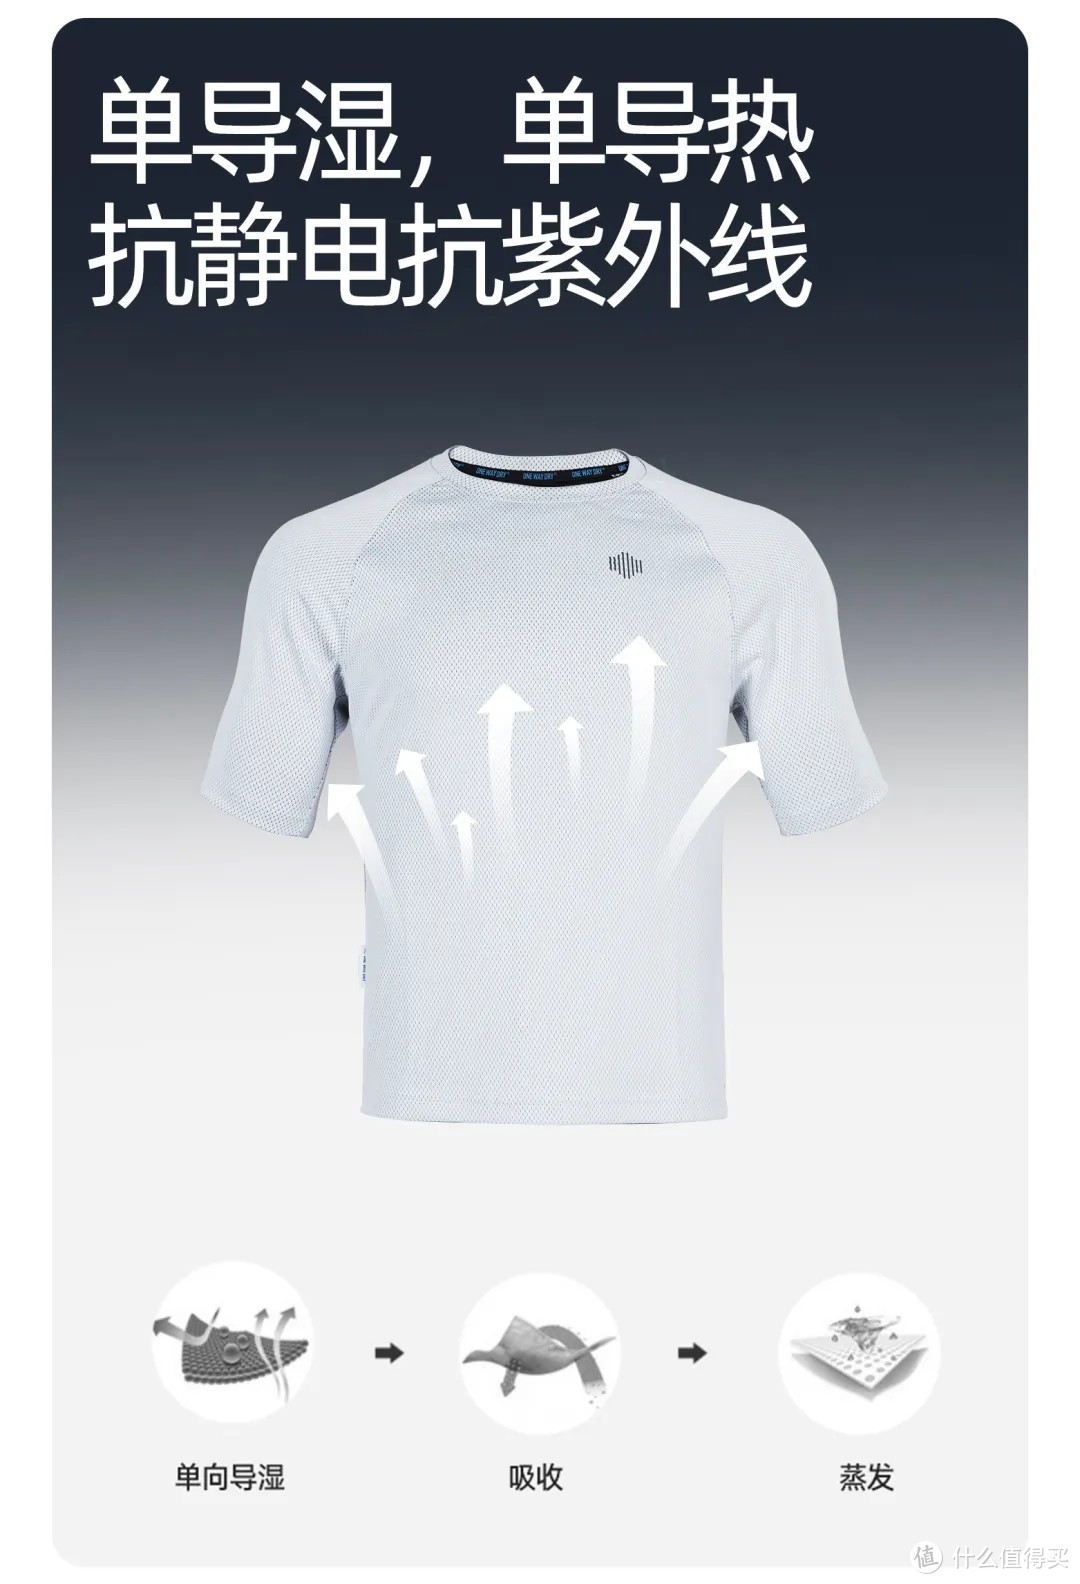 夏日清爽全能:单导新99T恤衫试用分享